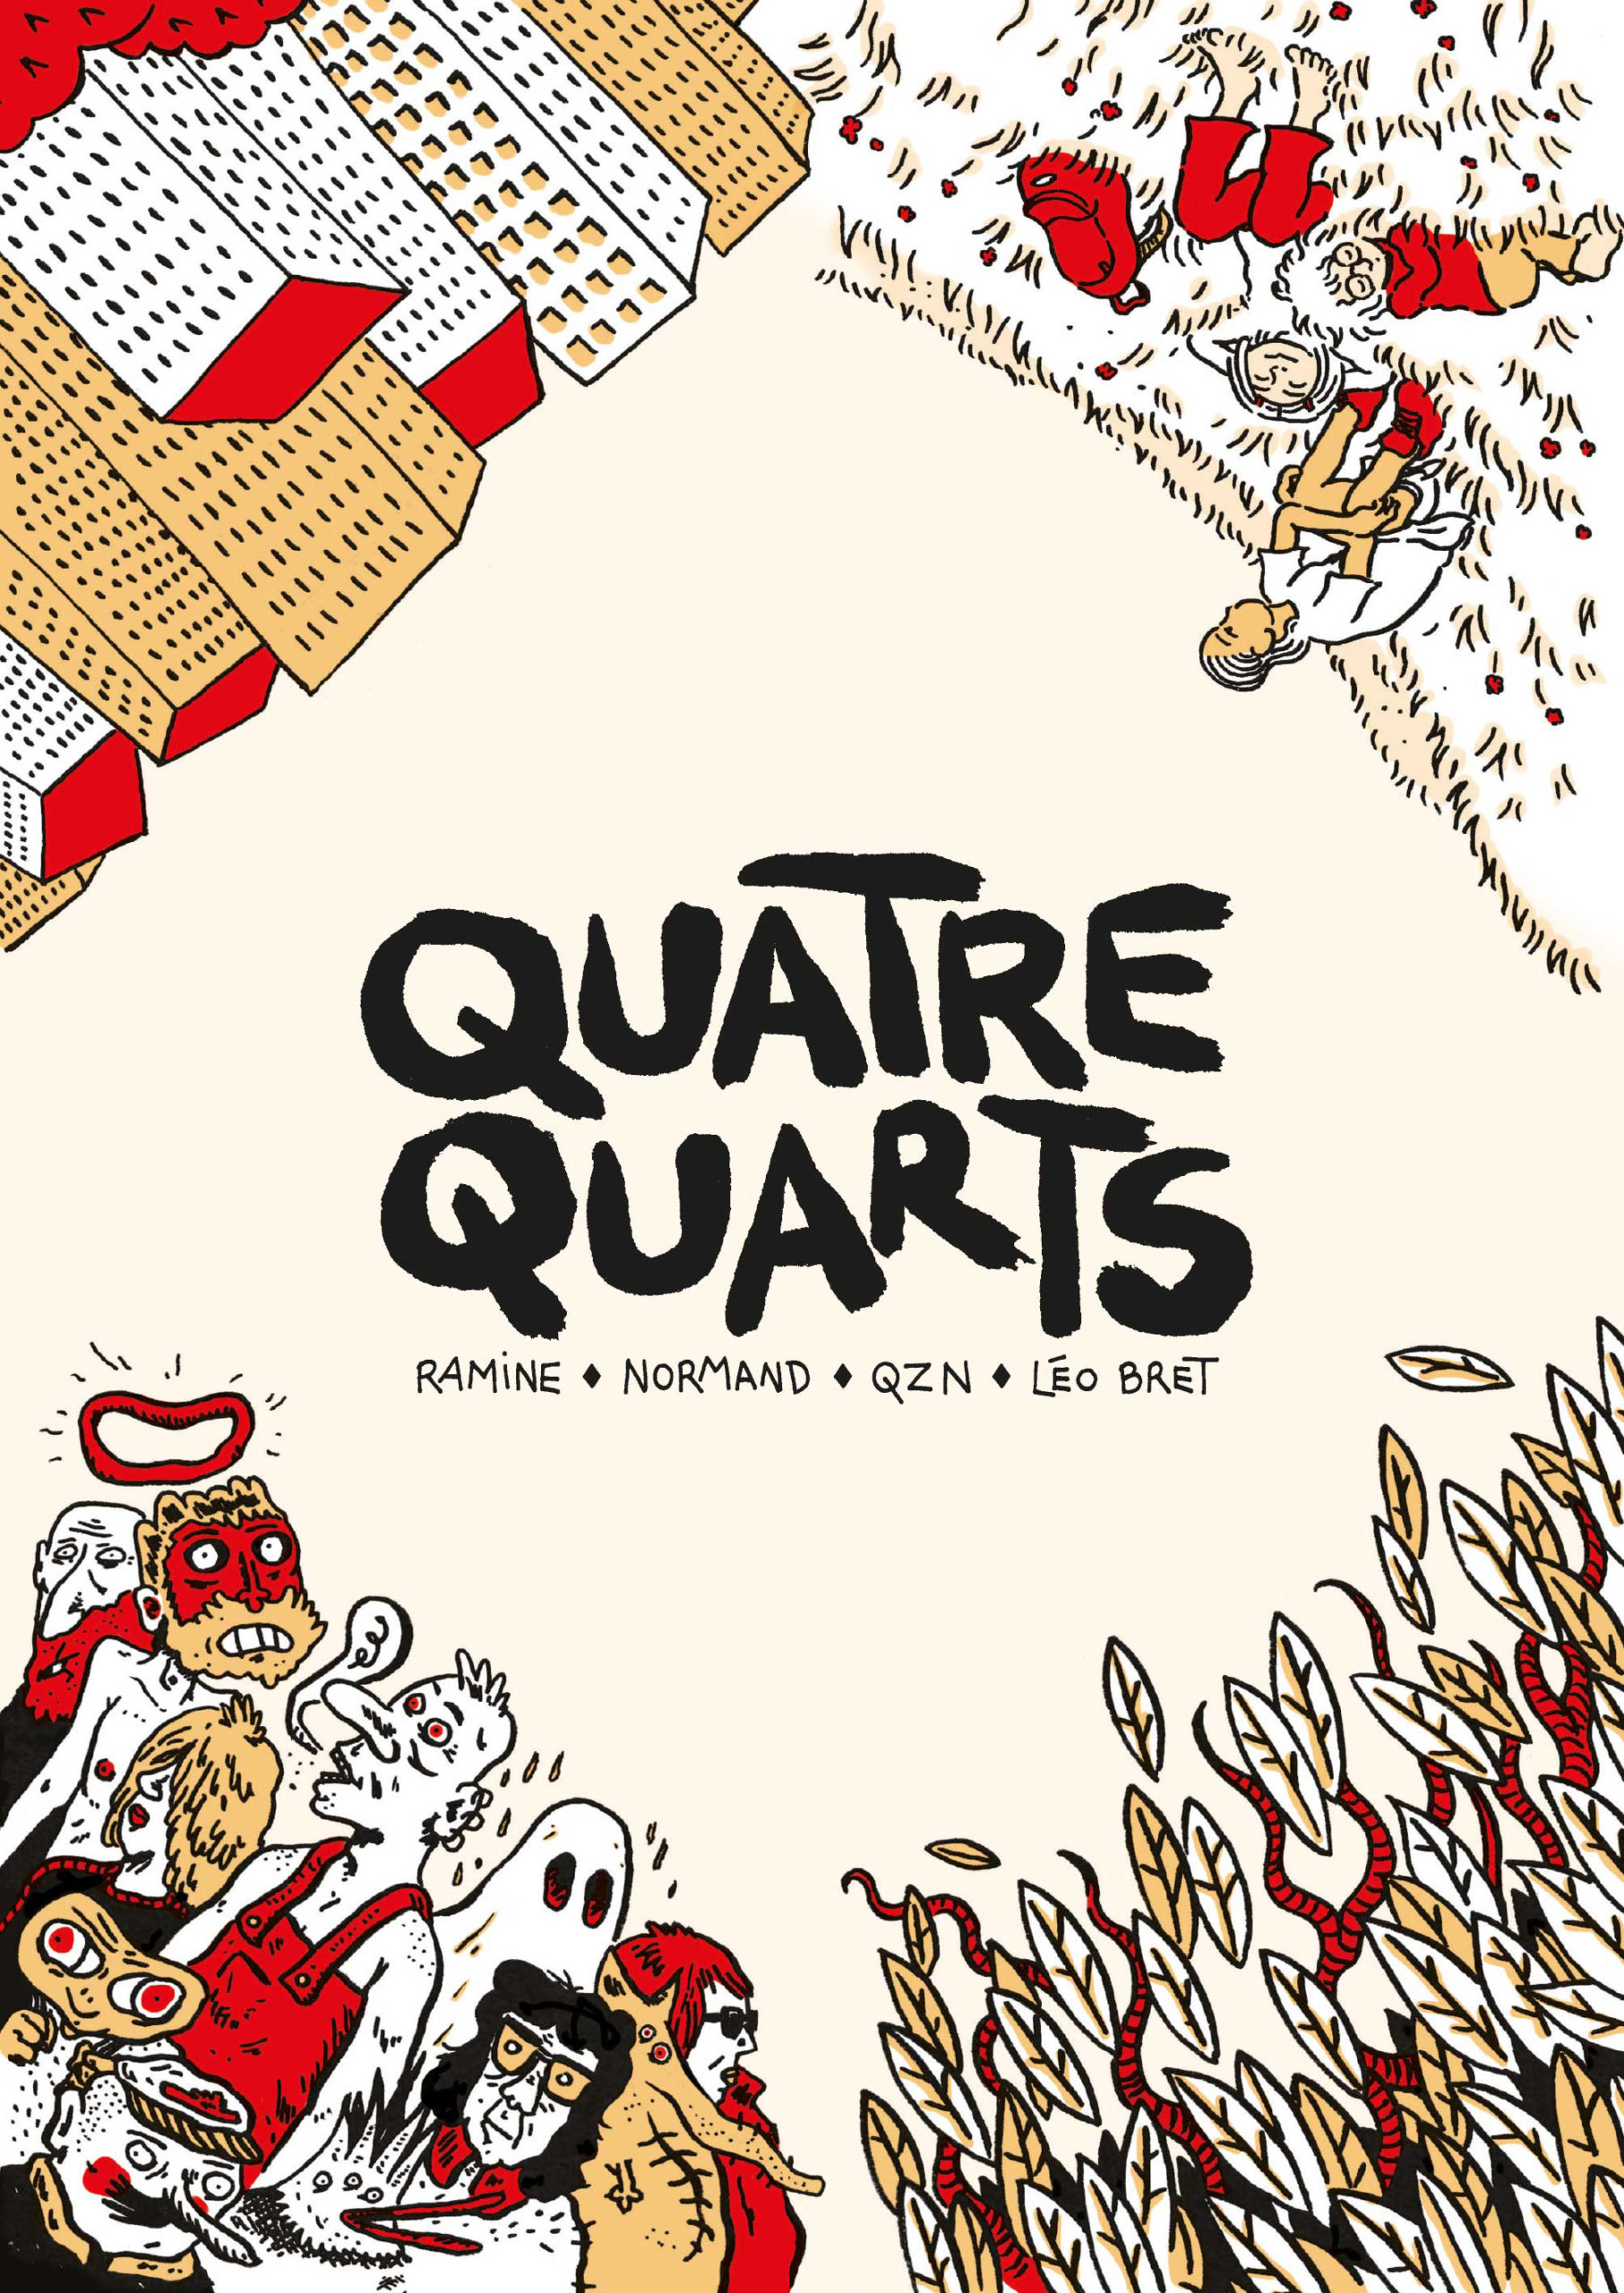 Première de couverture du livre Quatre Quarts.